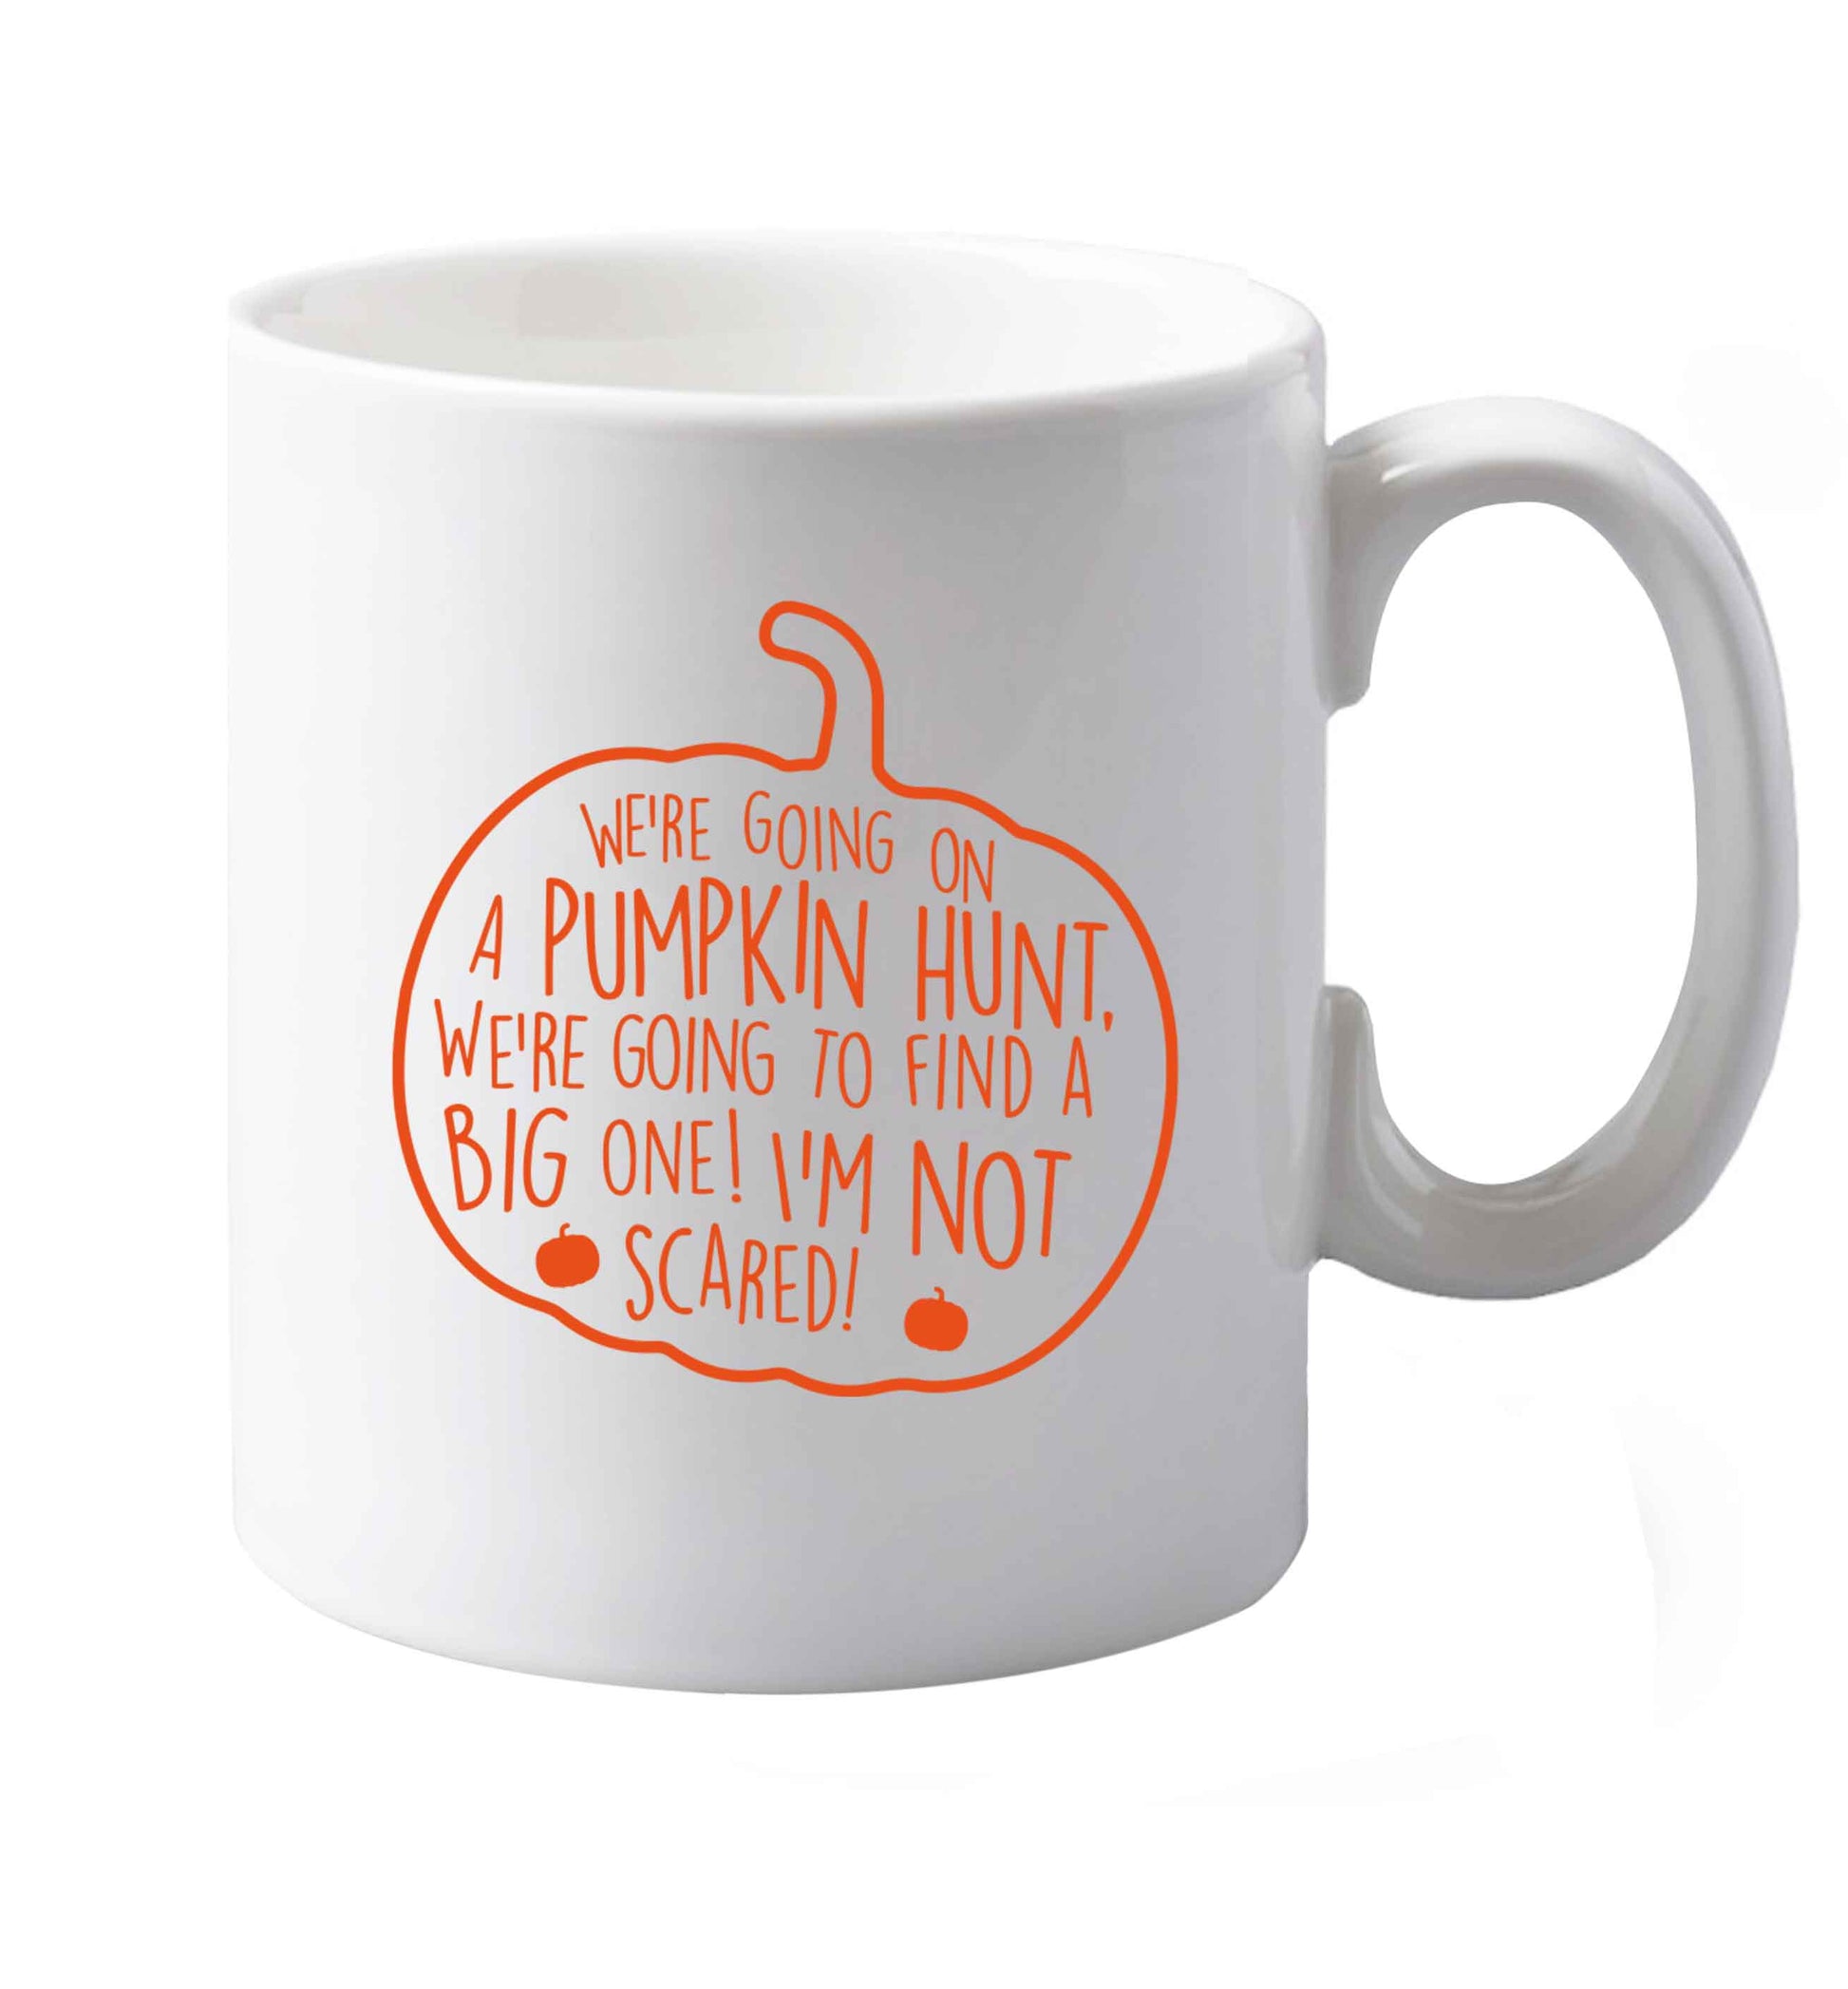 10 oz We're going on a pumpkin hunt ceramic mug both sides